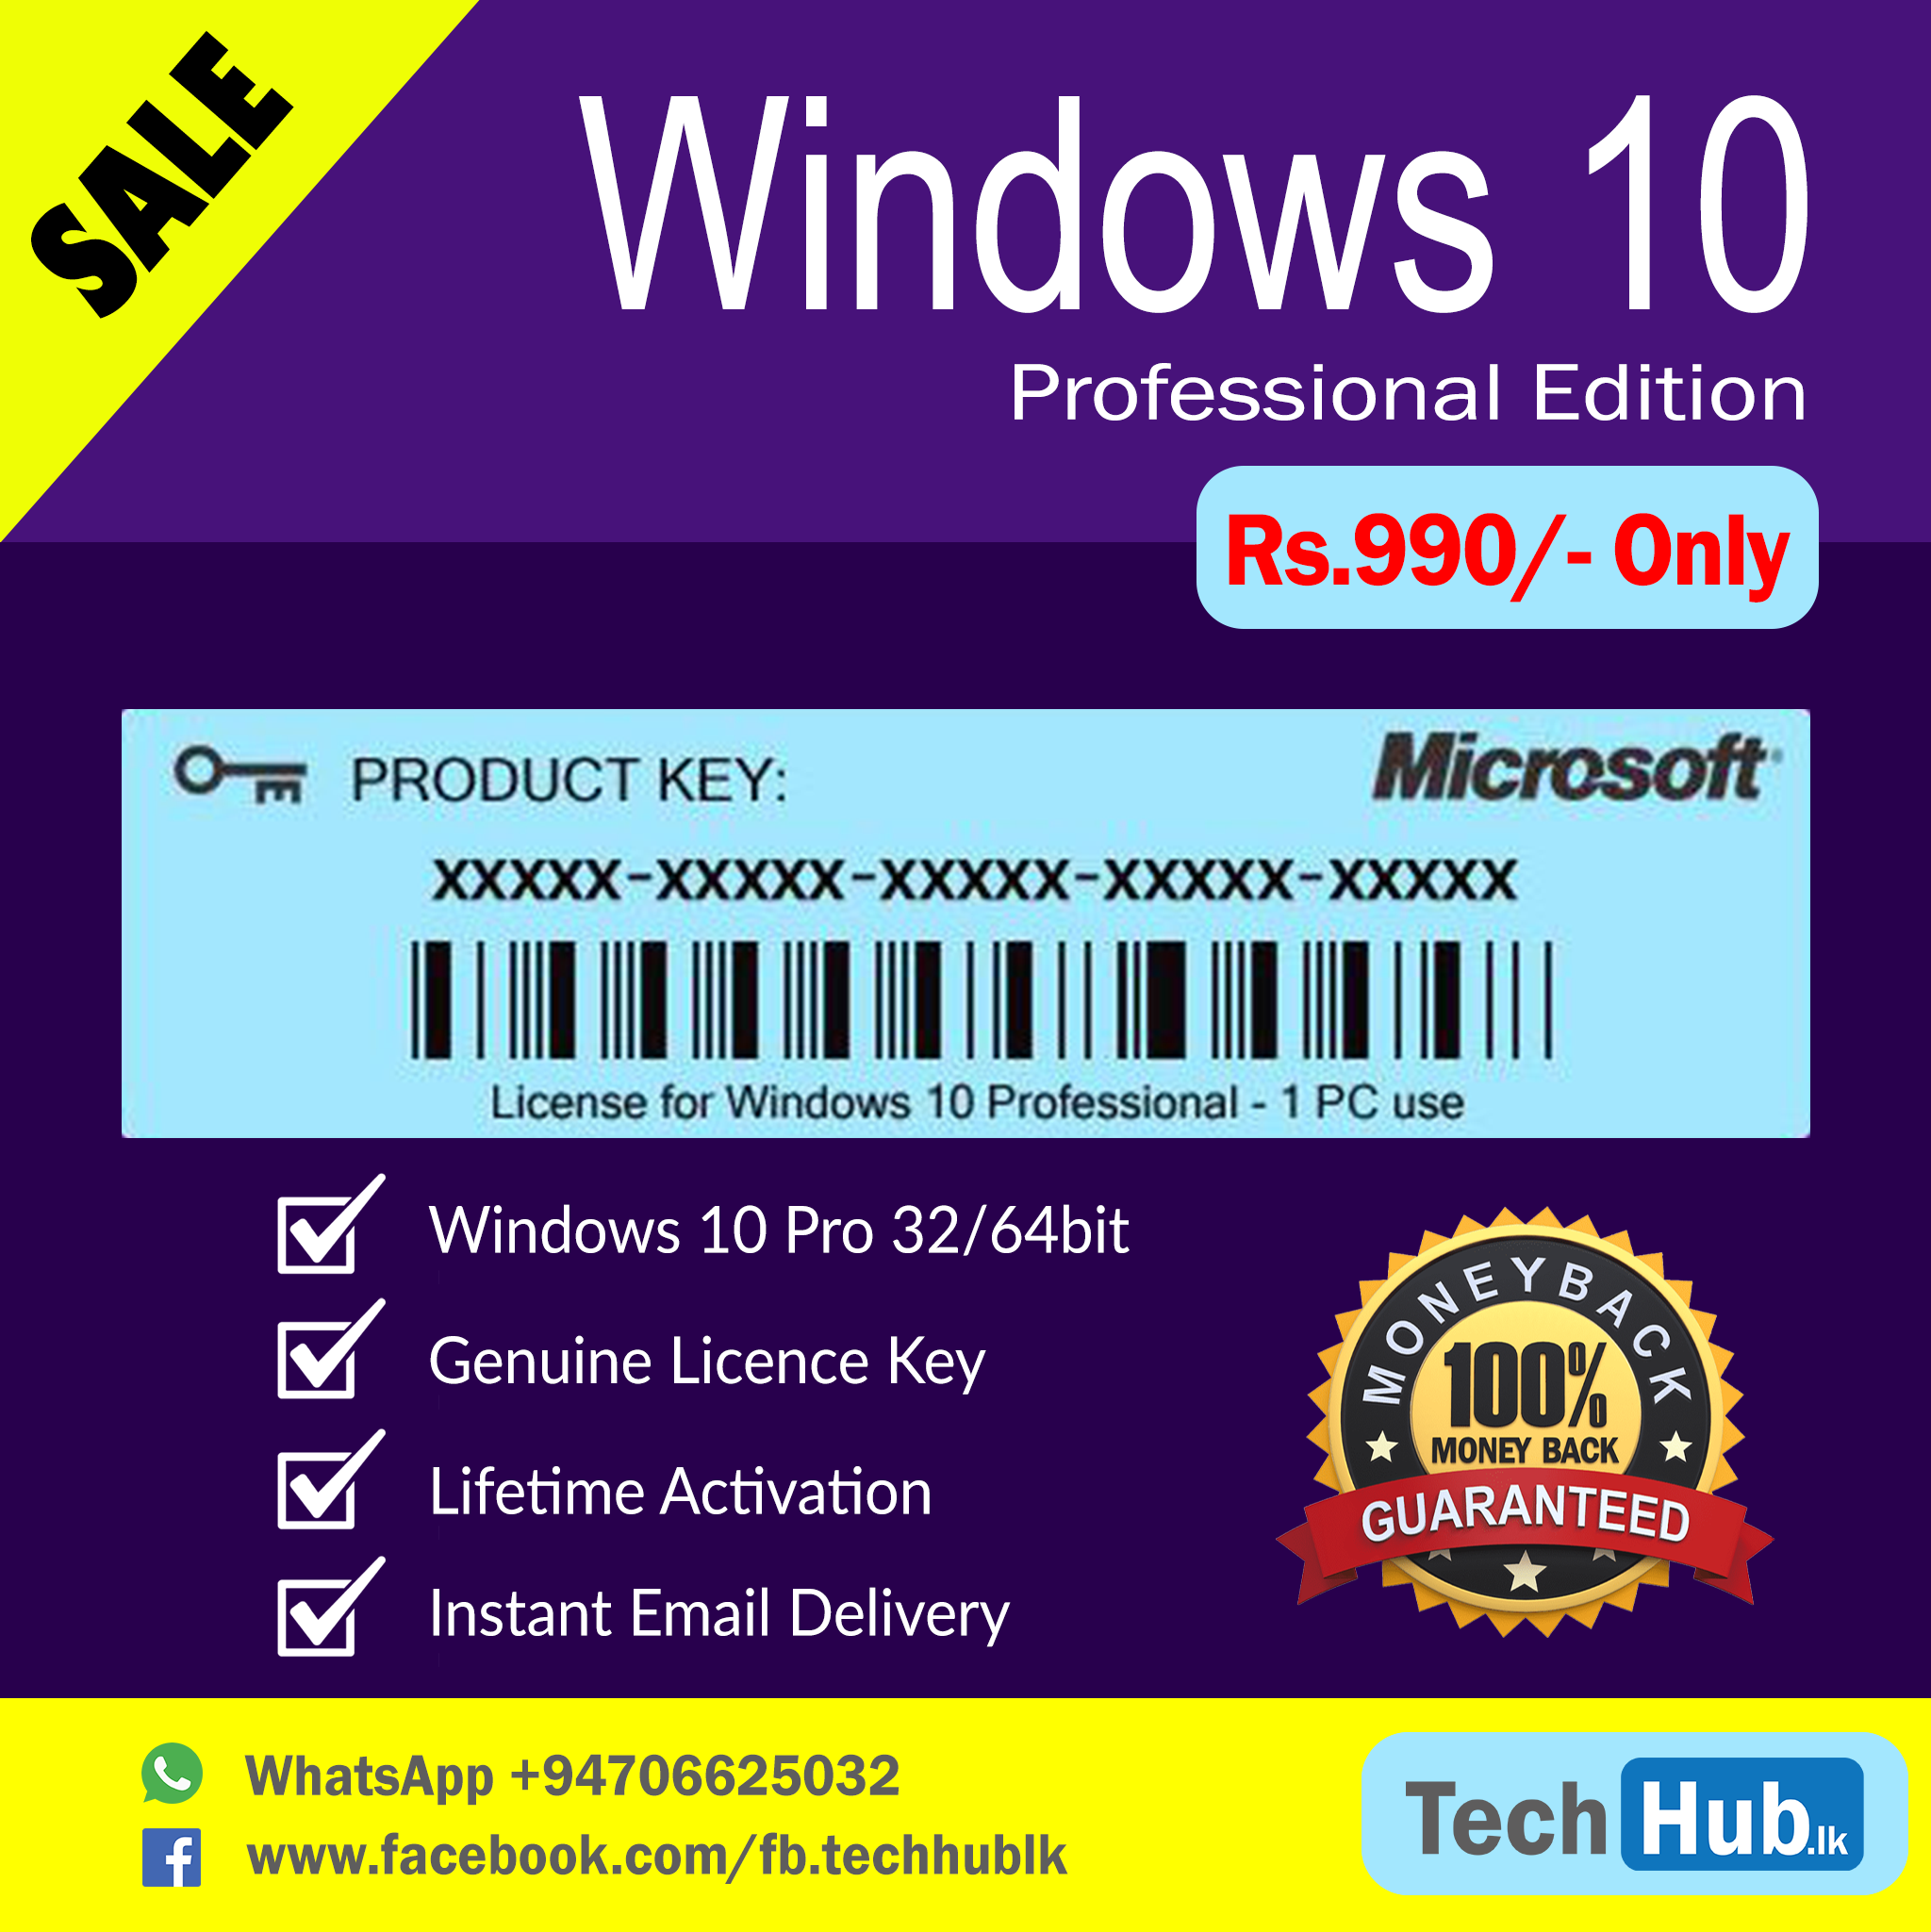 microsoft windows 10 pro license key bonanza legal